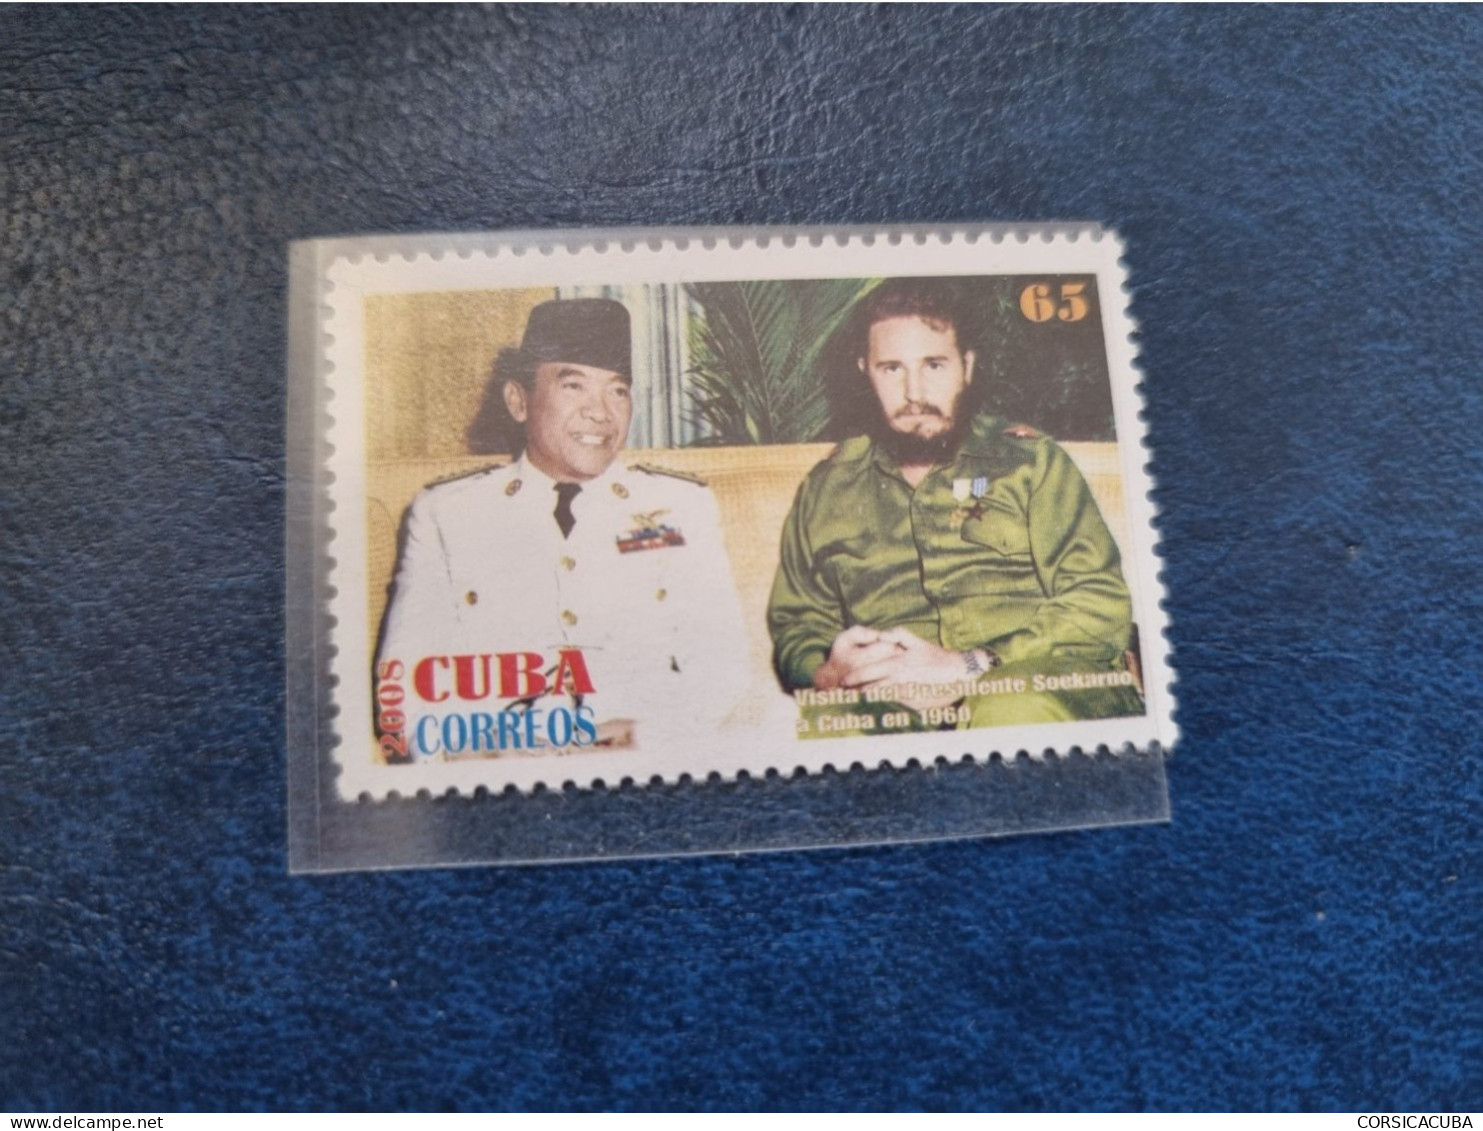 CUBA  NEUF  2008   VISITA  DE  SOCKARNO  A  CUBA  CON  FIDEL  //  PARFAIT  ETAT  //  1er  CHOIX  // - Unused Stamps